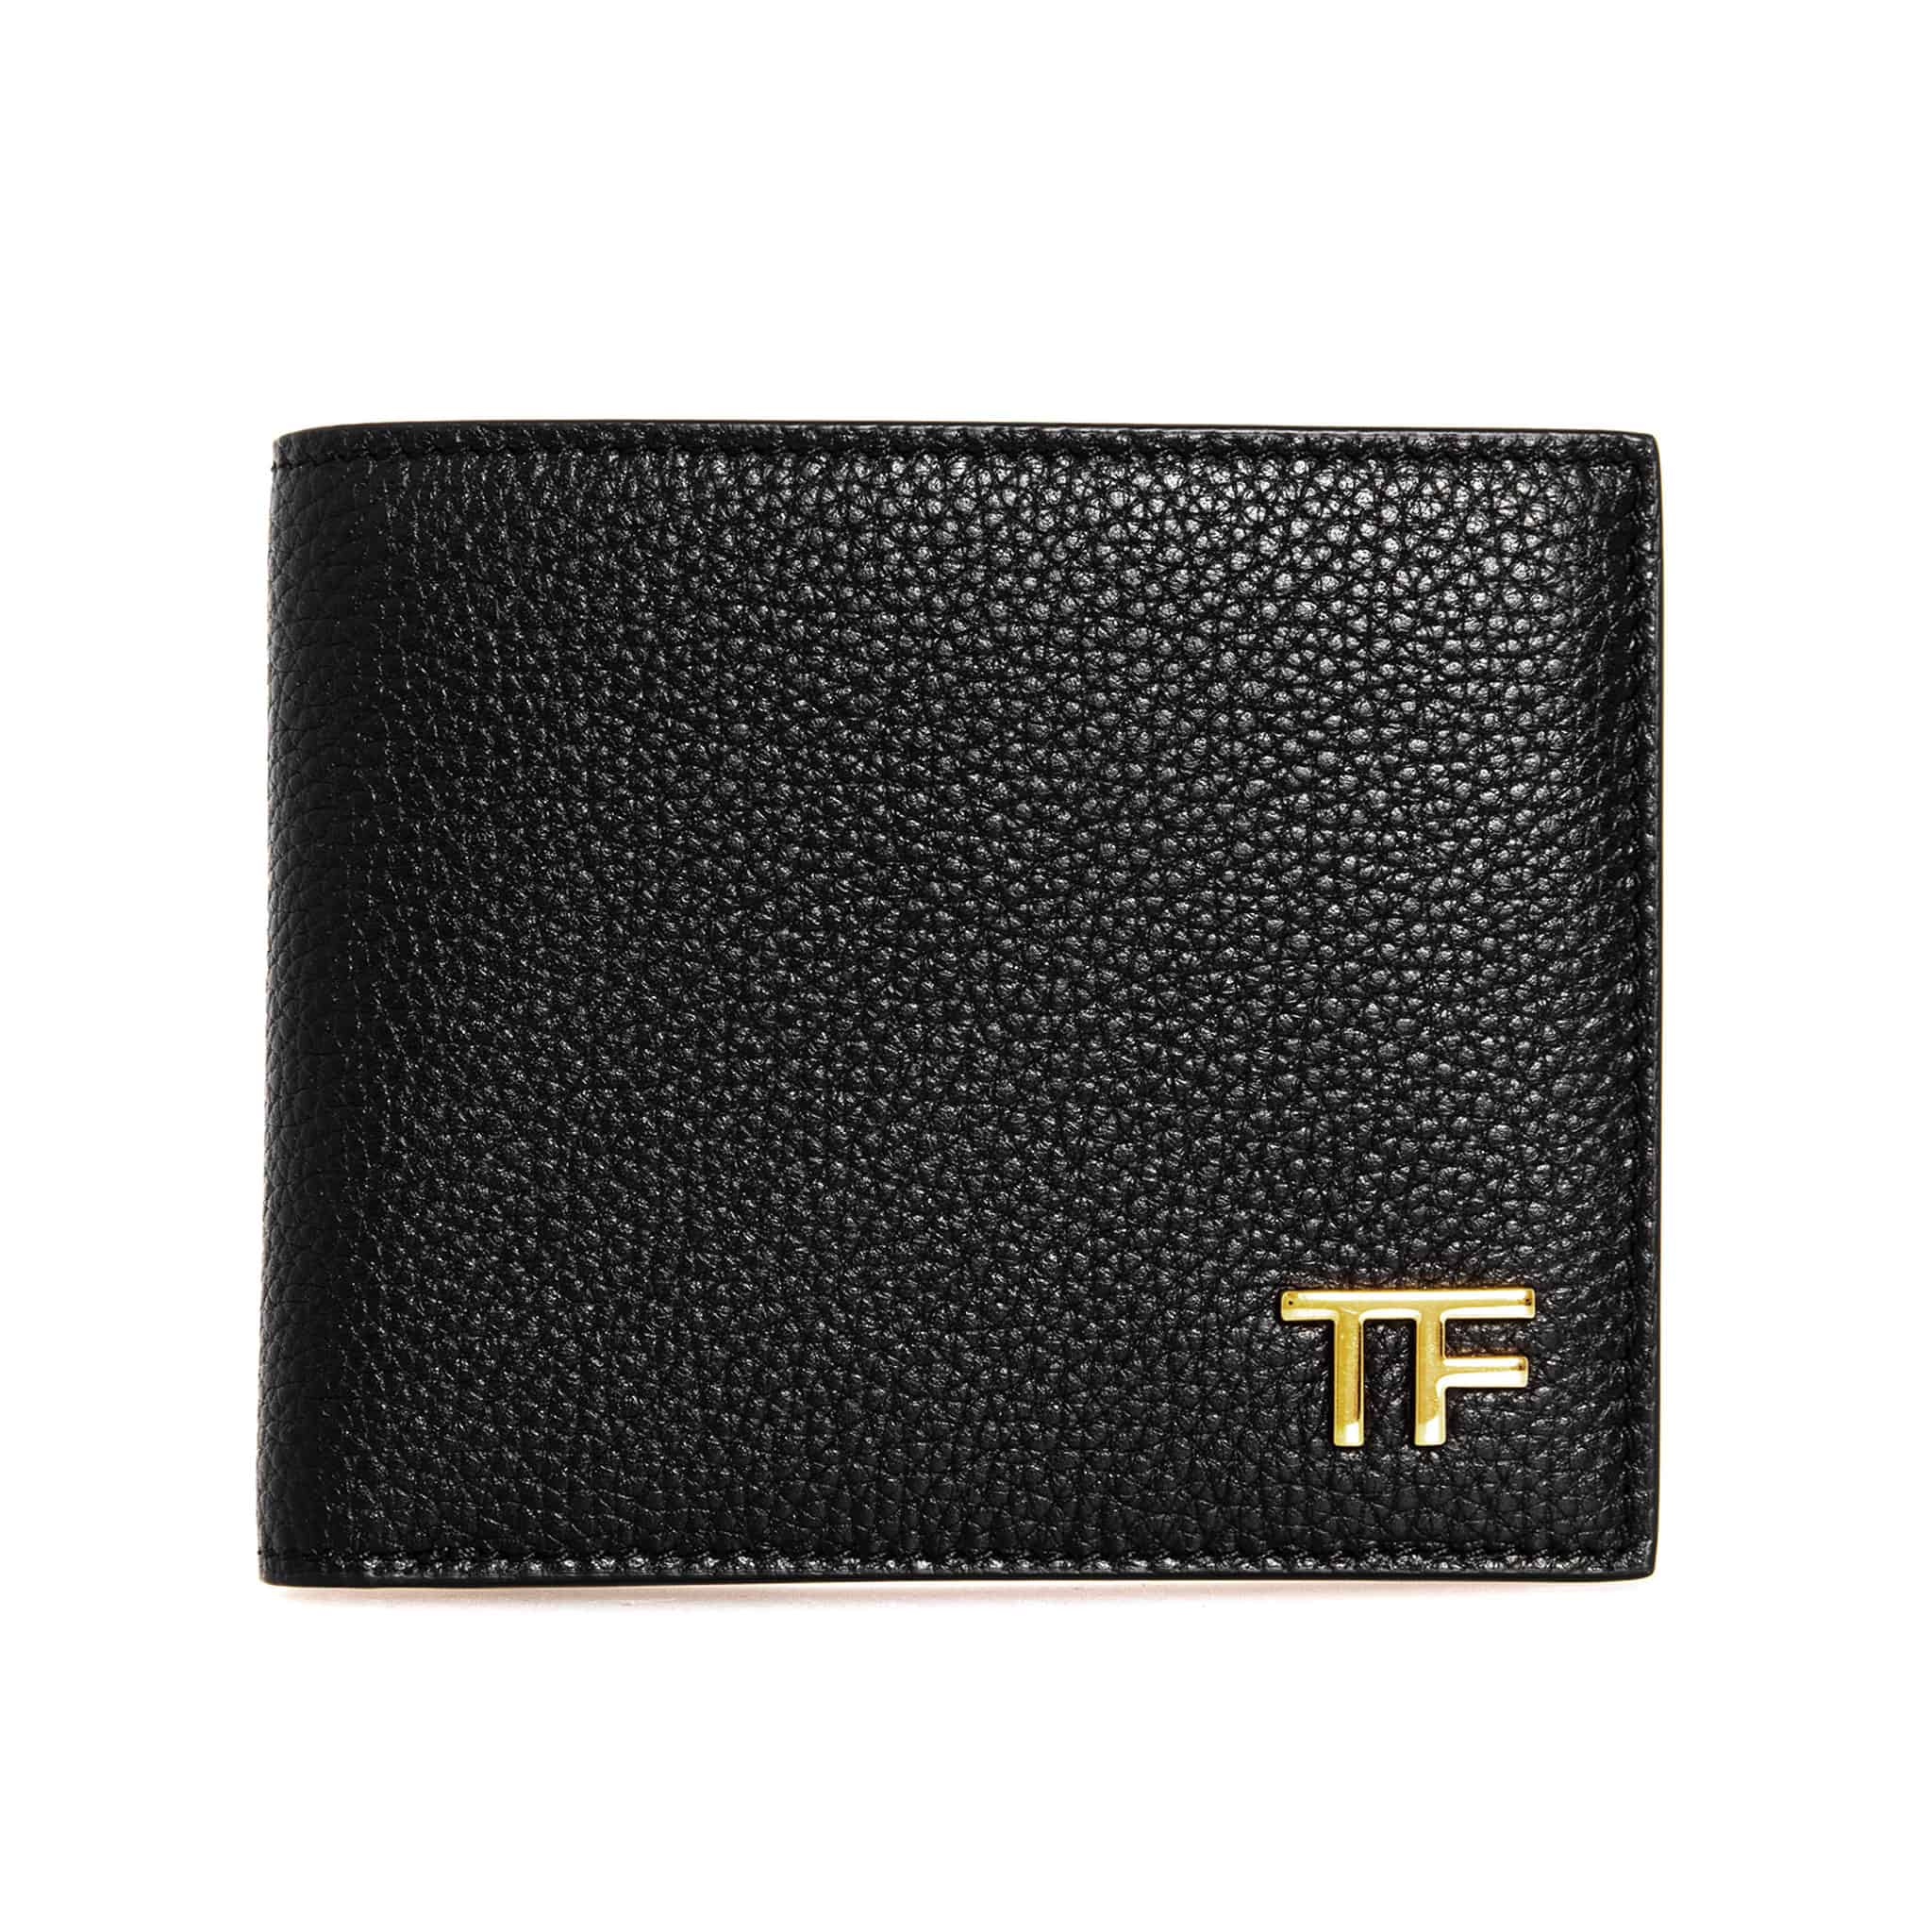 トムフォード TOM FORD 財布 メンズ 二つ折り財布 T LINE CLASSIC BIFOLD WALLET YT228 LCL158G 1N001 BLACK/GOLD